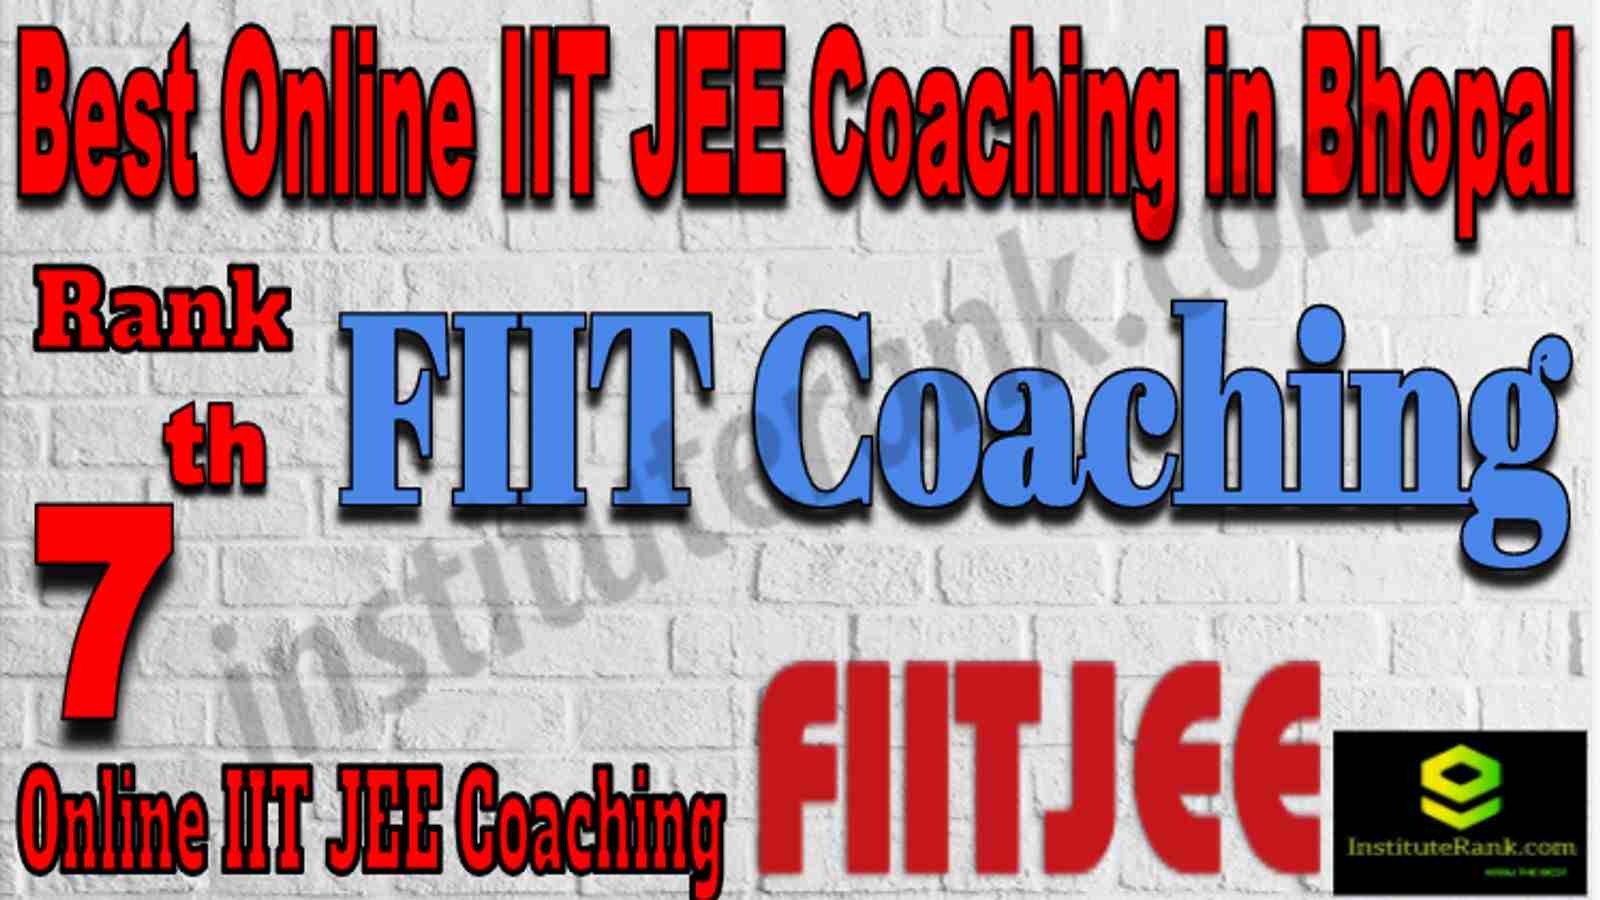 Rank 7 Best Online IIT JEE Coaching in Bhopal